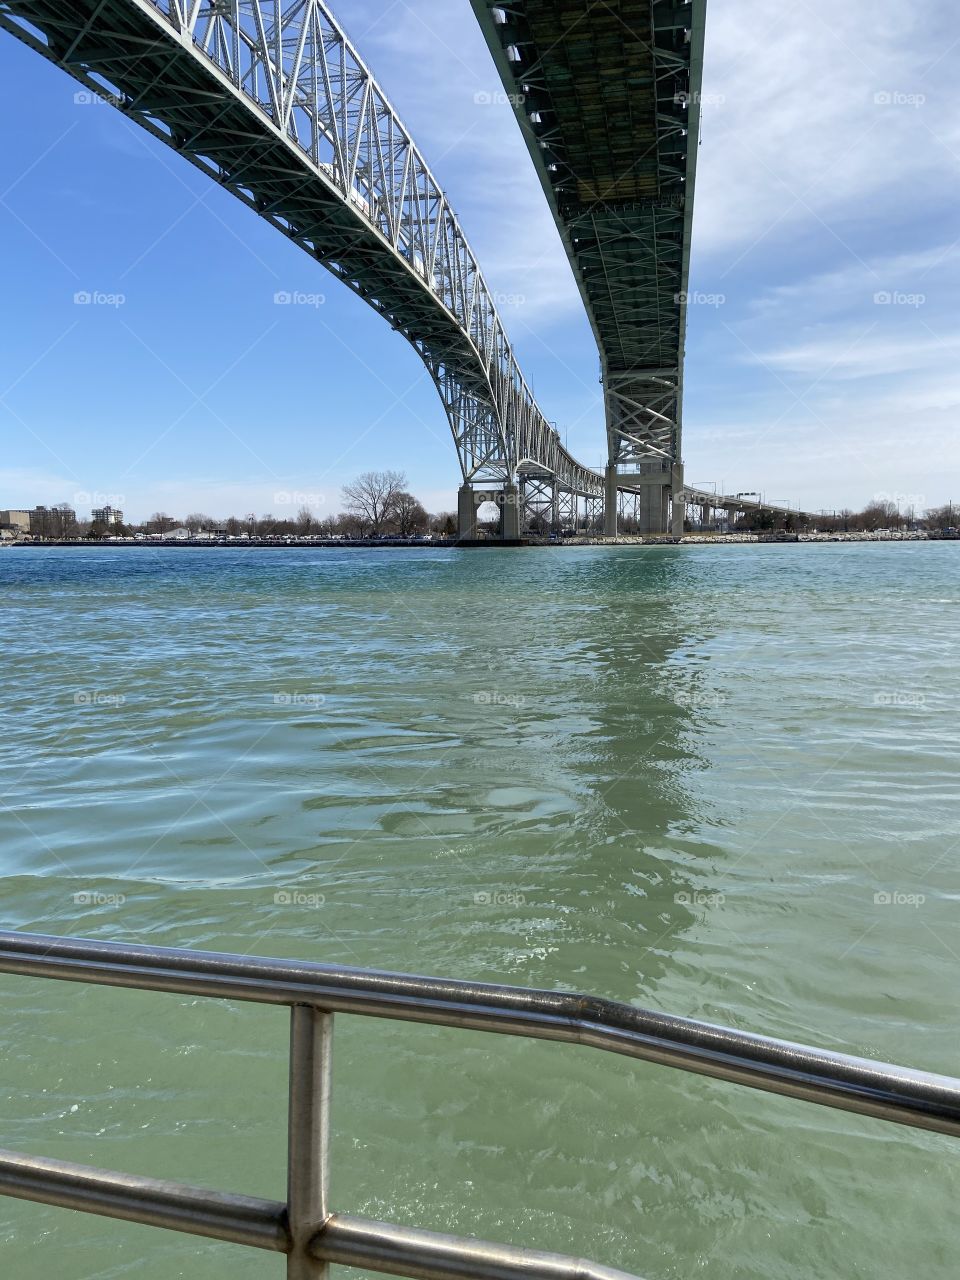 Under the Blue Water Bridge